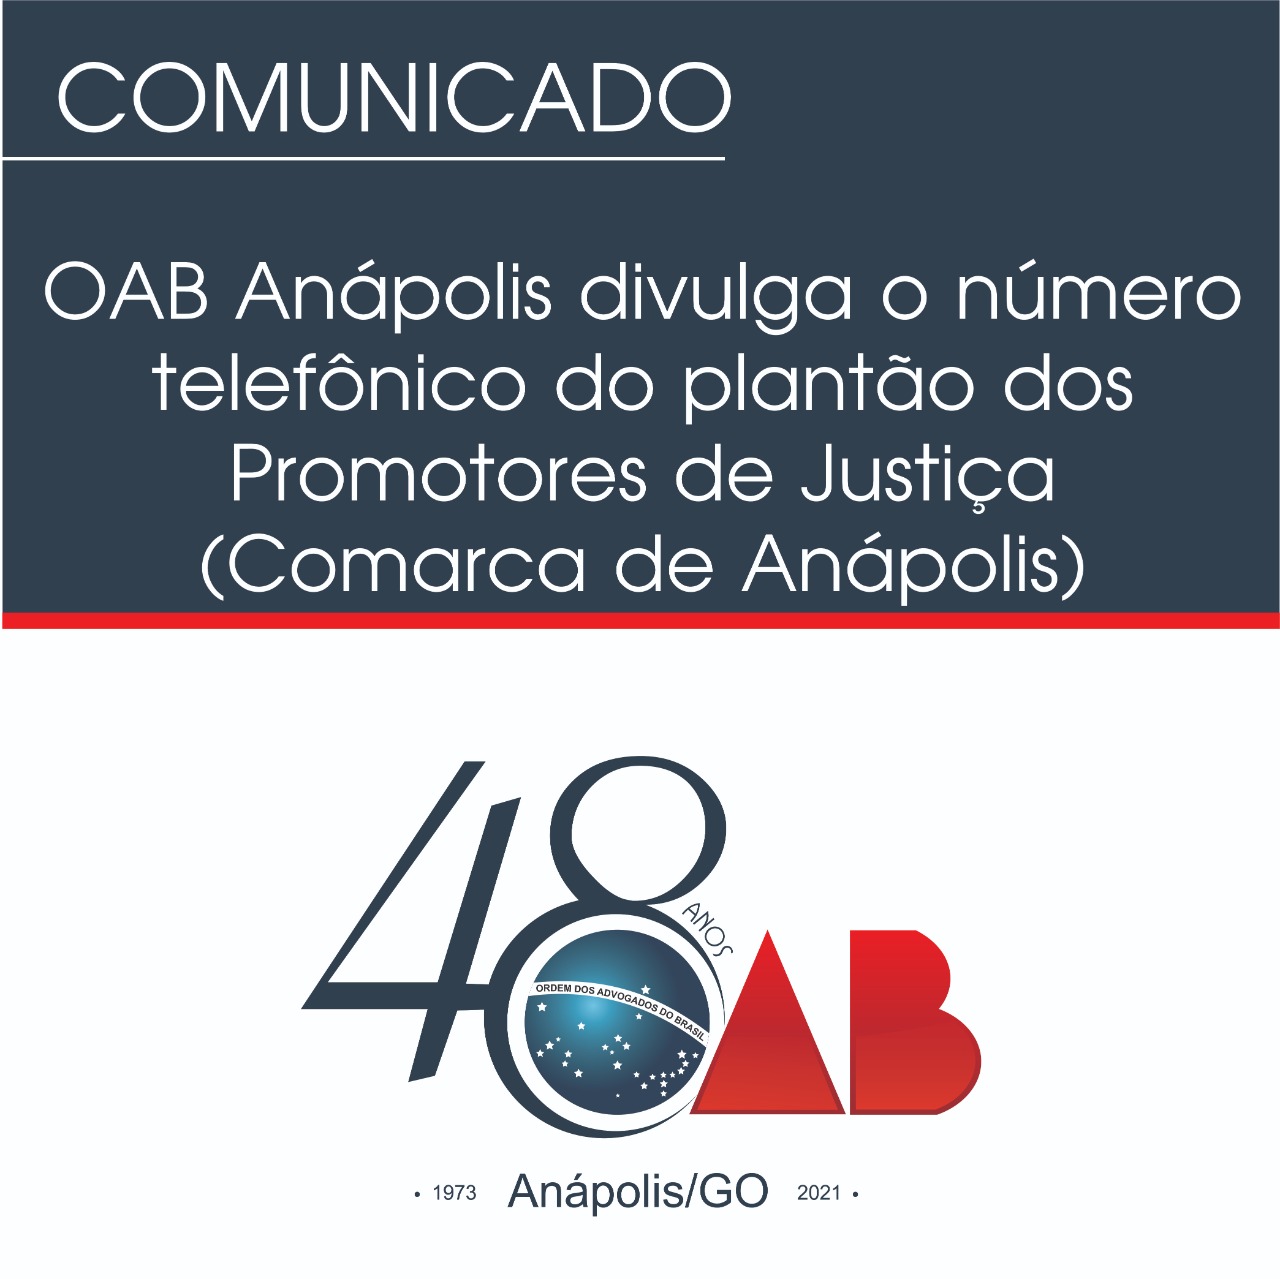 OAB Anápolis divulga o número telefônico do plantão dos Promotores de Justiça (Comarca de Anápolis)